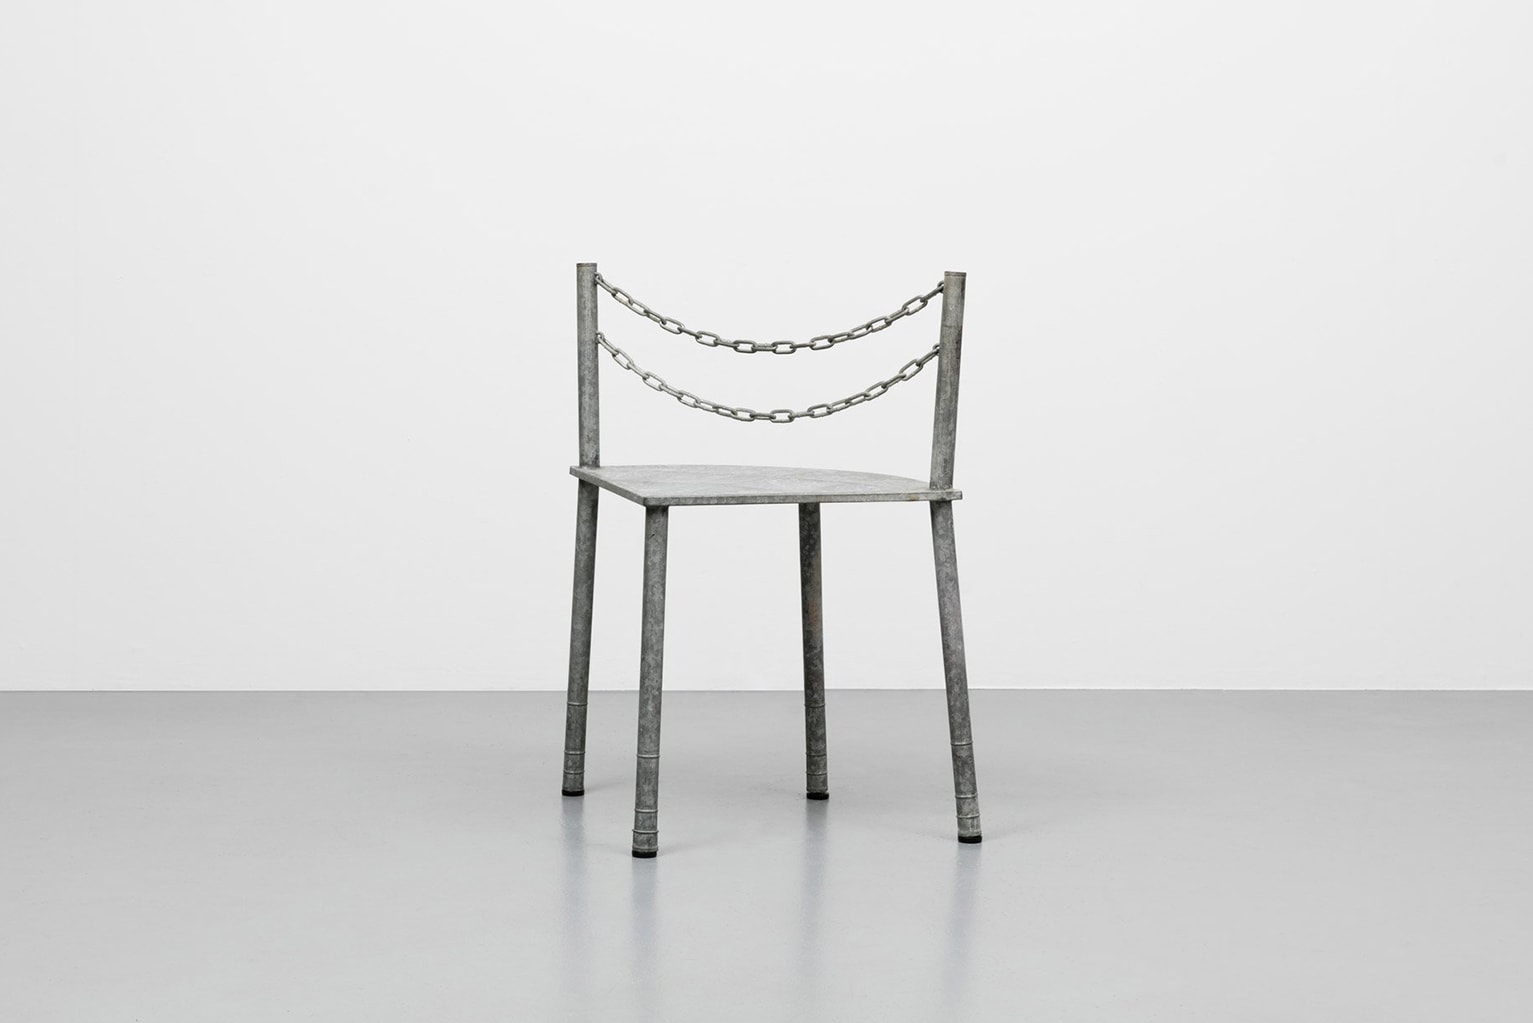 COMME des GARCONS Furniture Rei Kawakubo Galerie A1043 Paris